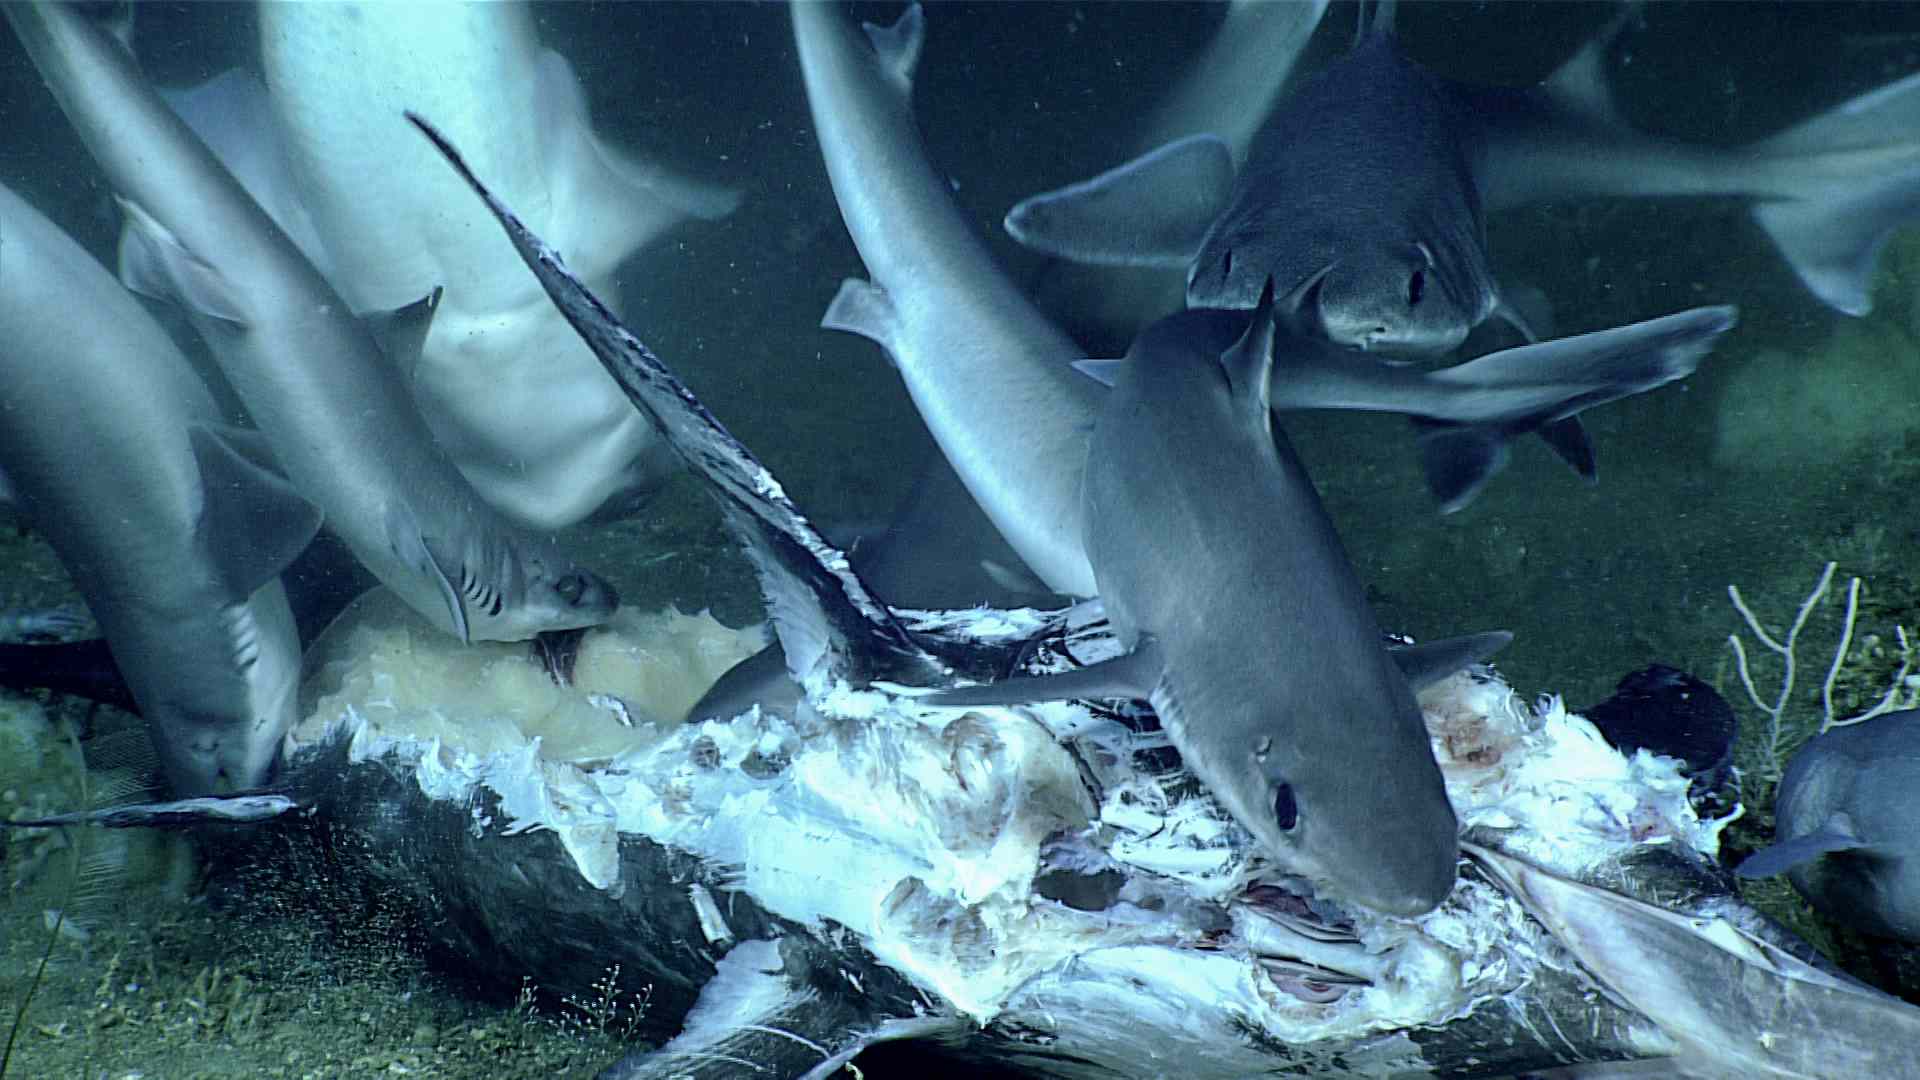 角鲨正在吃旗鱼的尸体。